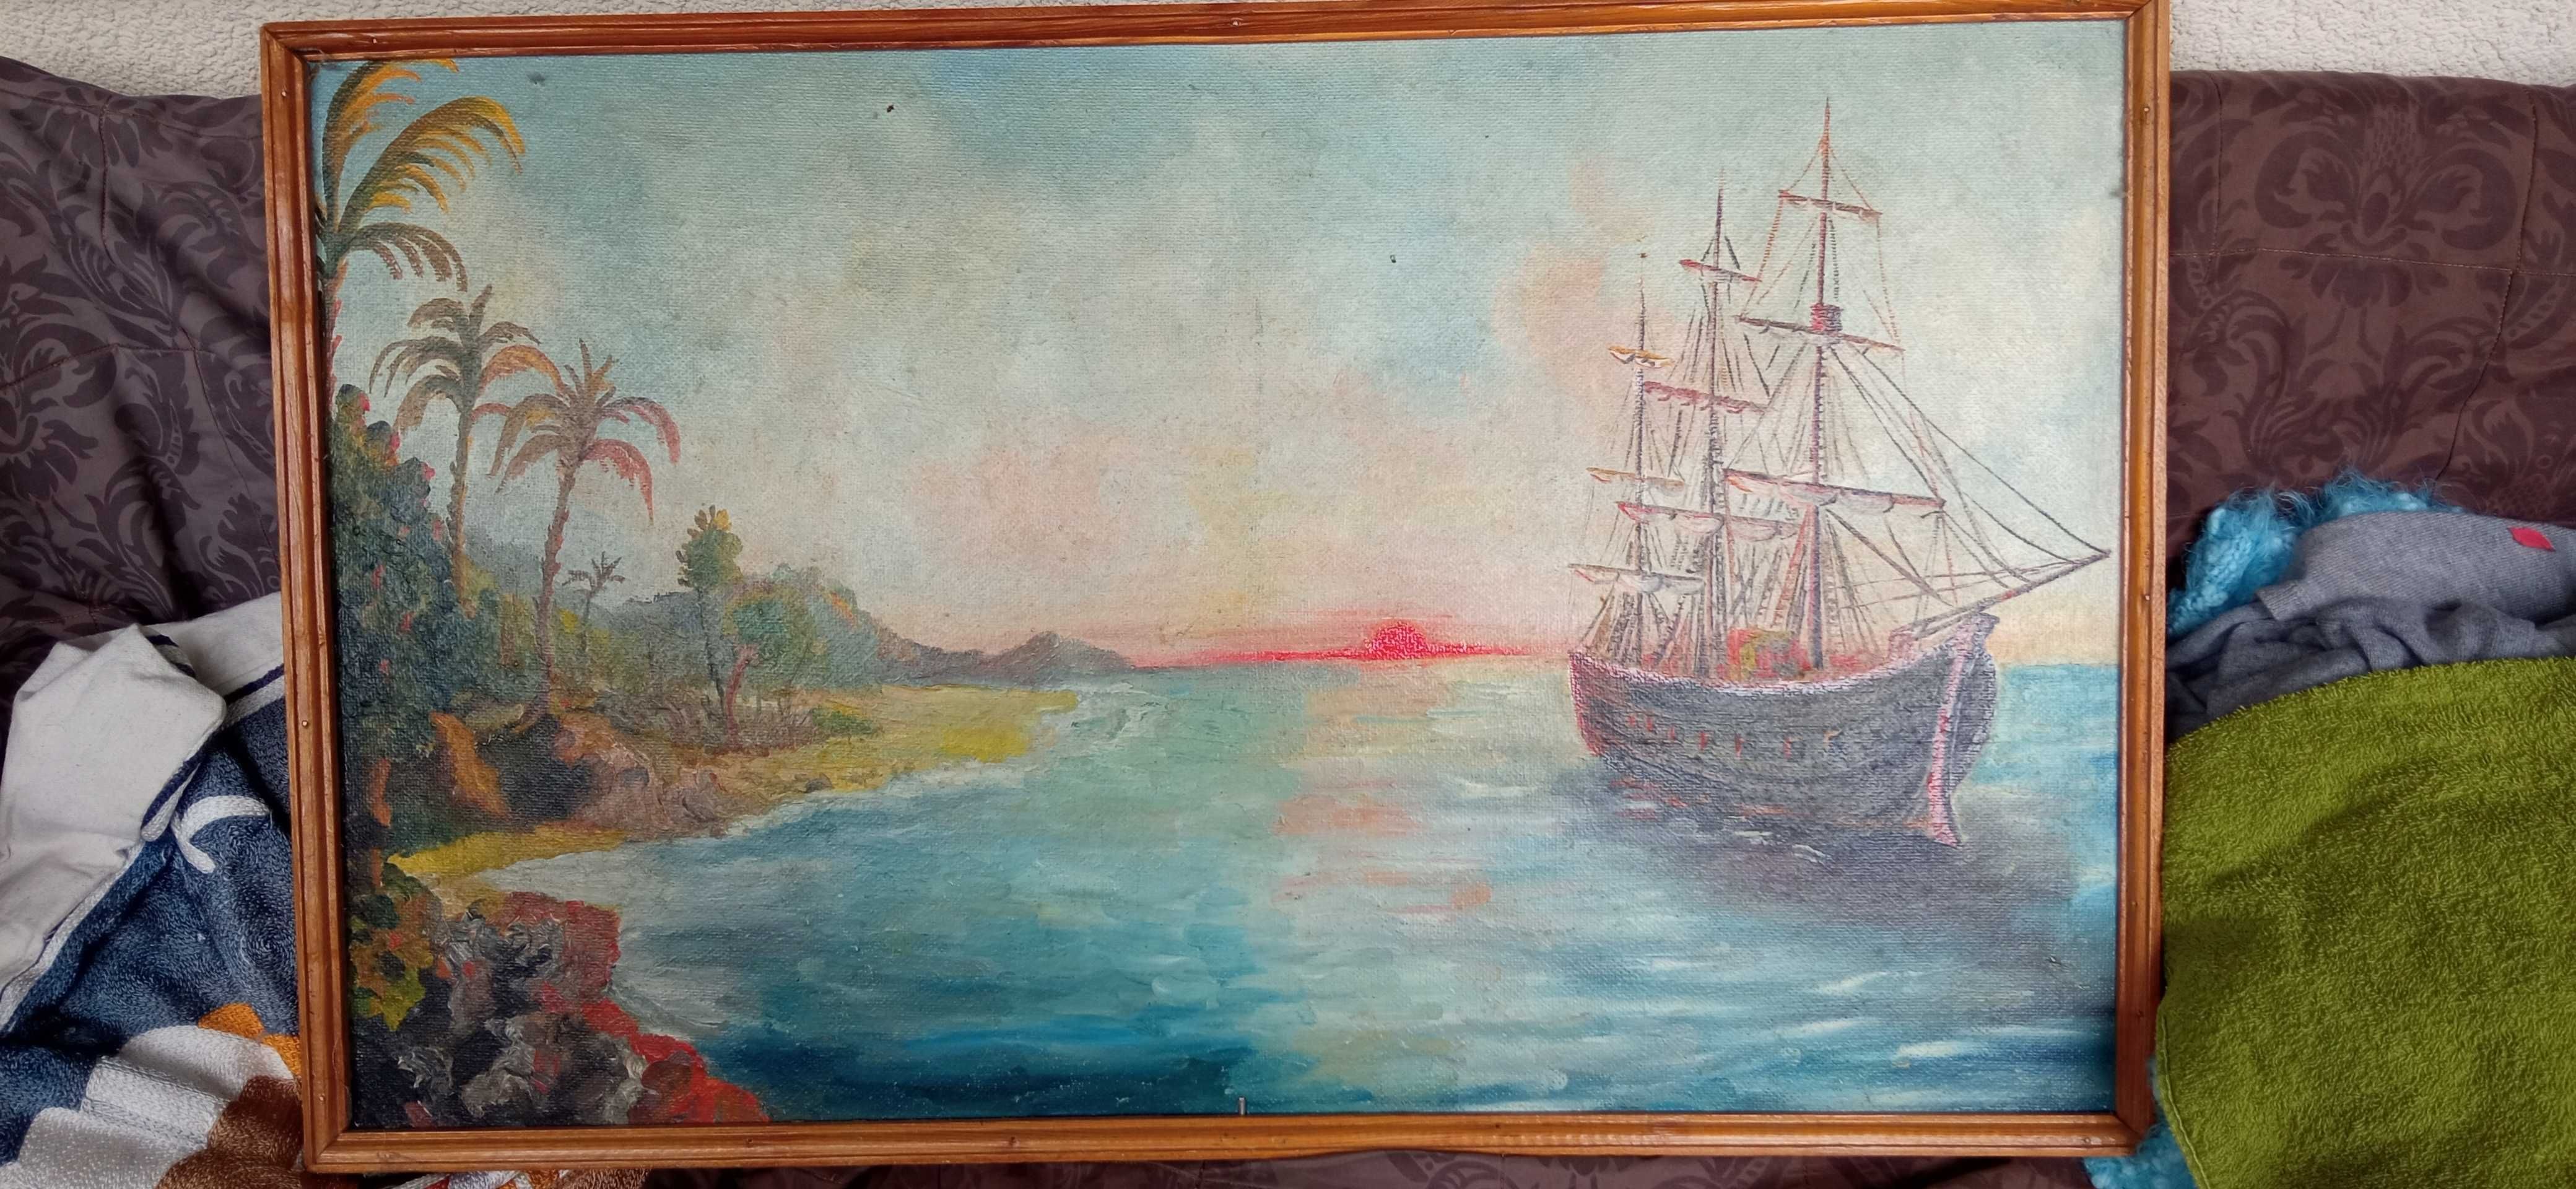 Obraz olejny, olej, ręcznie malowany, statek, okręt  80x50